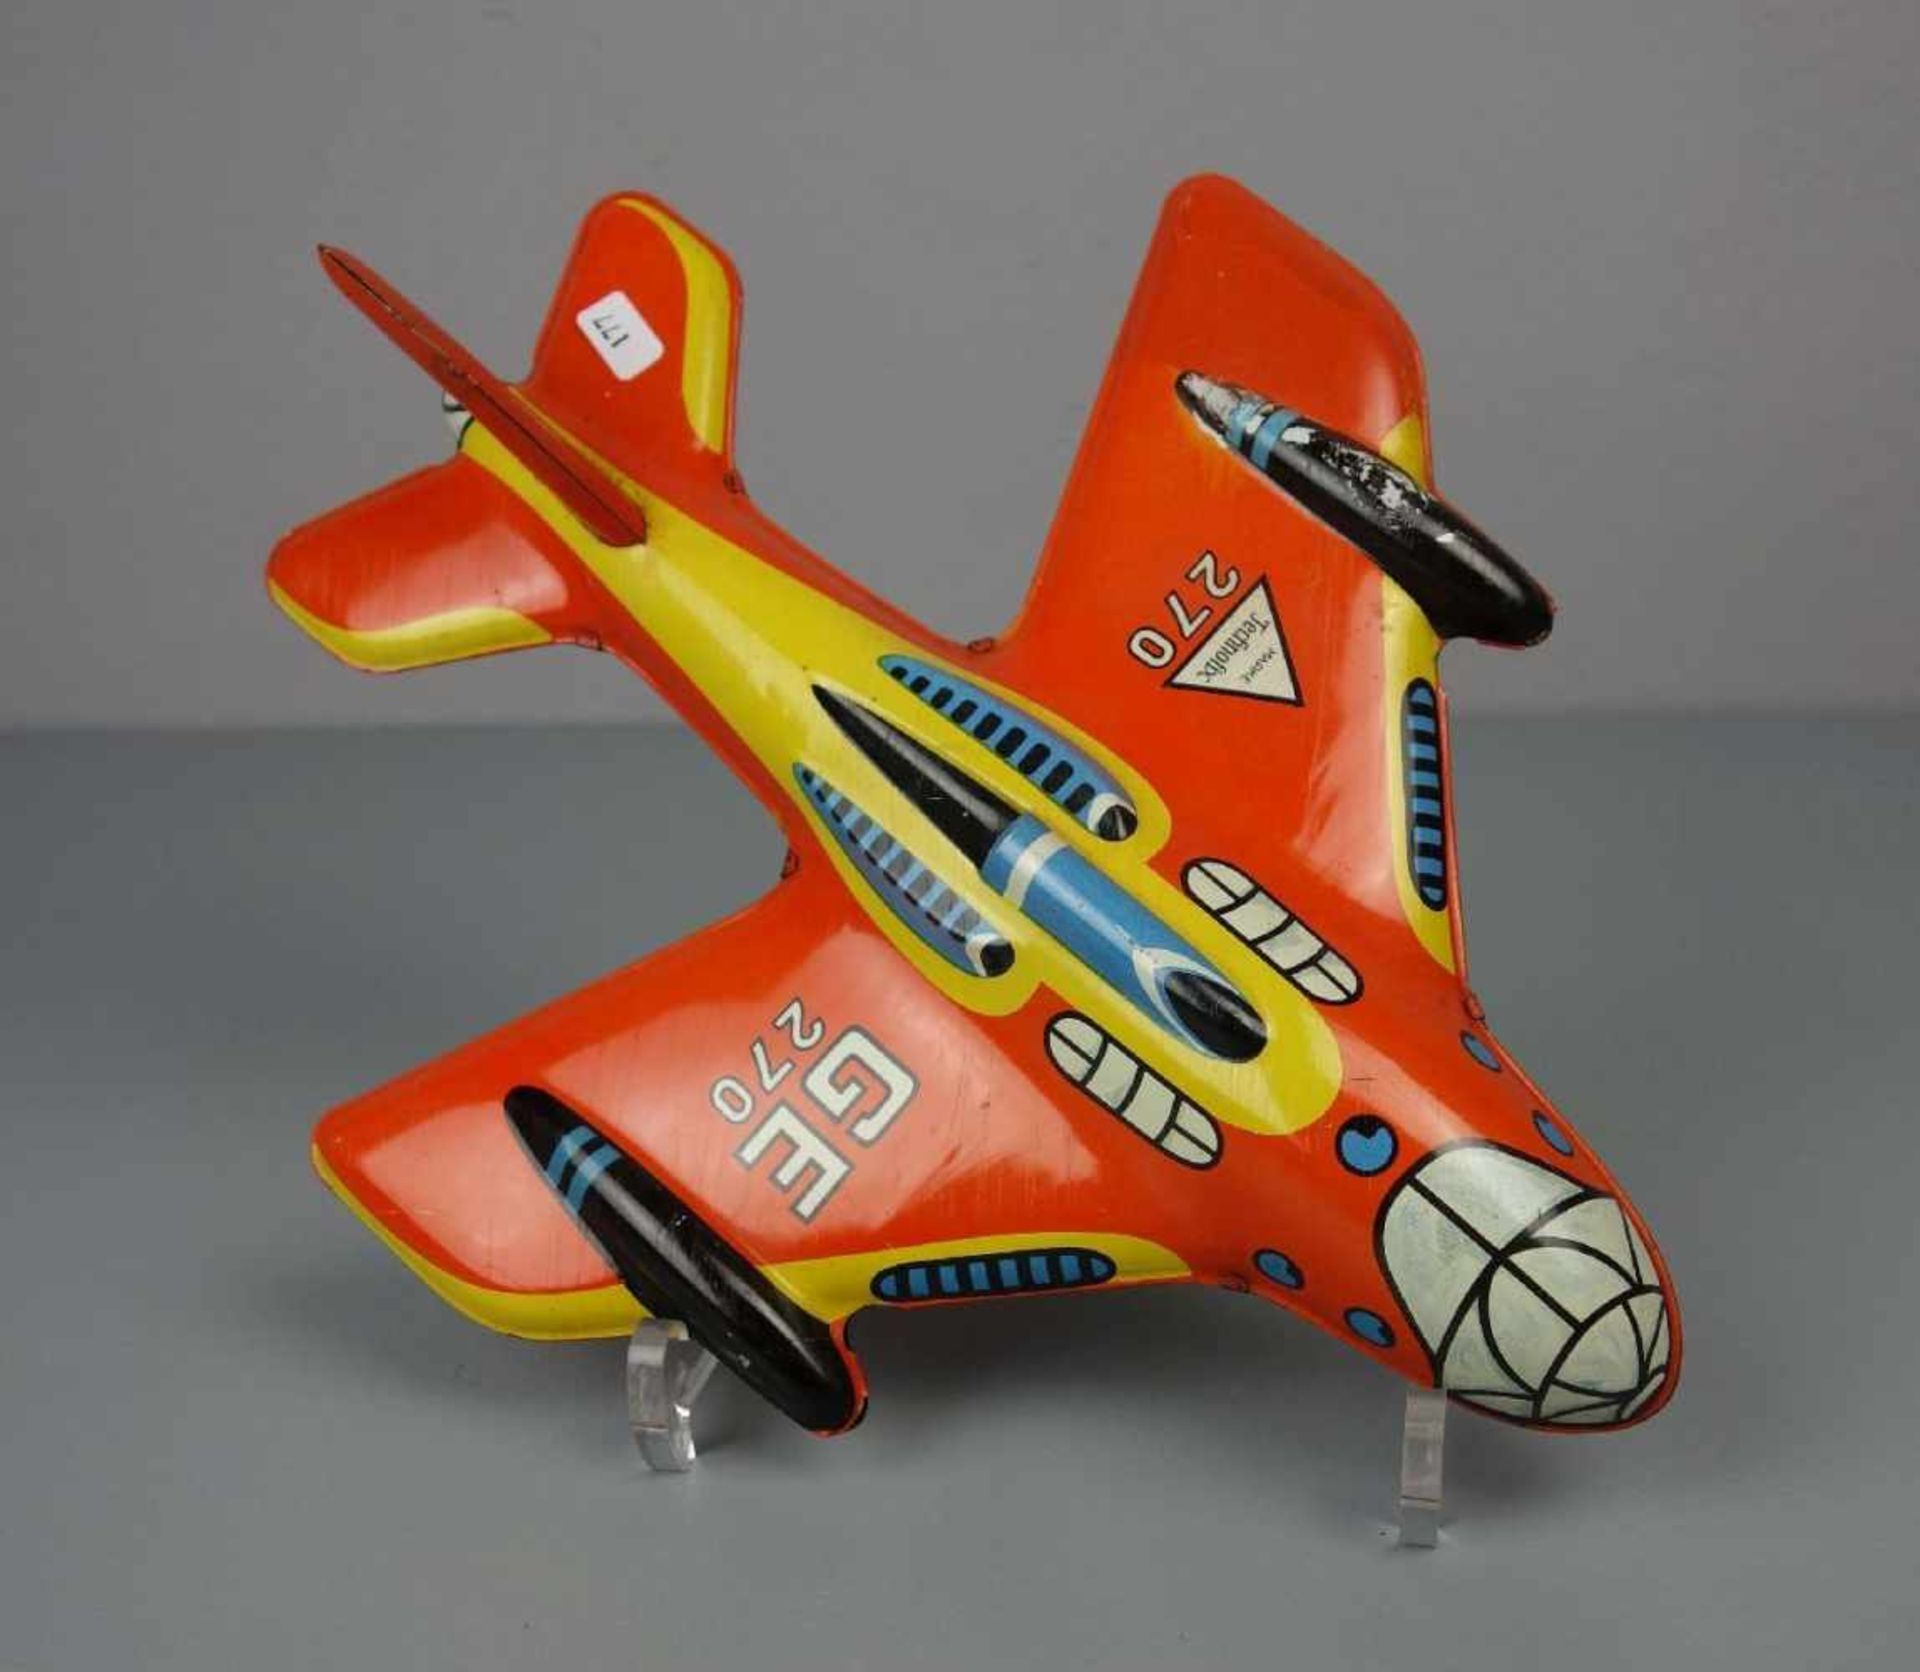 BLECHSPIELZEUG: TECHNOFIX FLUGZEUG / tin toy plane, Mitte 20. Jh., Manufaktur Gebrüder Einfalt - Bild 3 aus 4